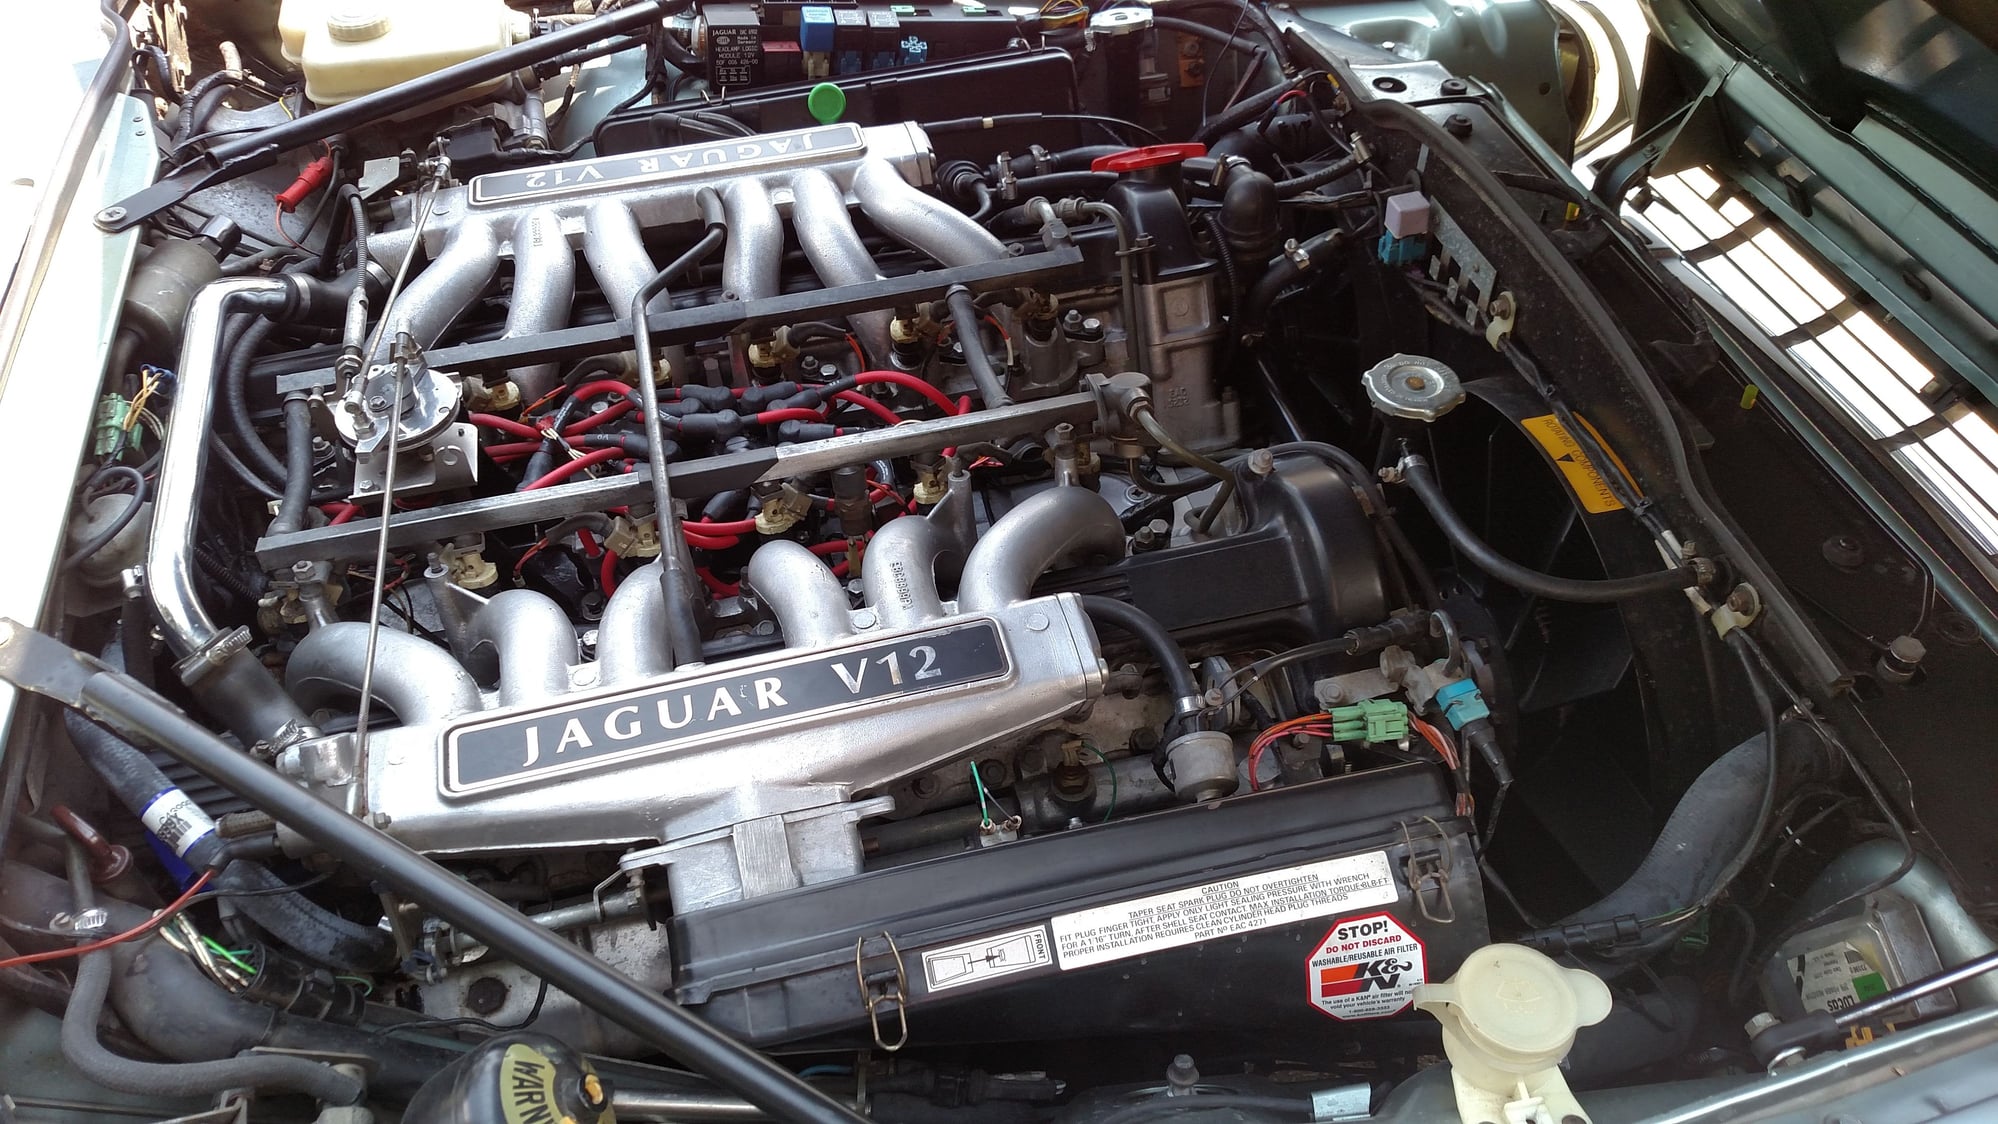 air/smog pump removal question - Jaguar Forums - Jaguar Enthusiasts Forum